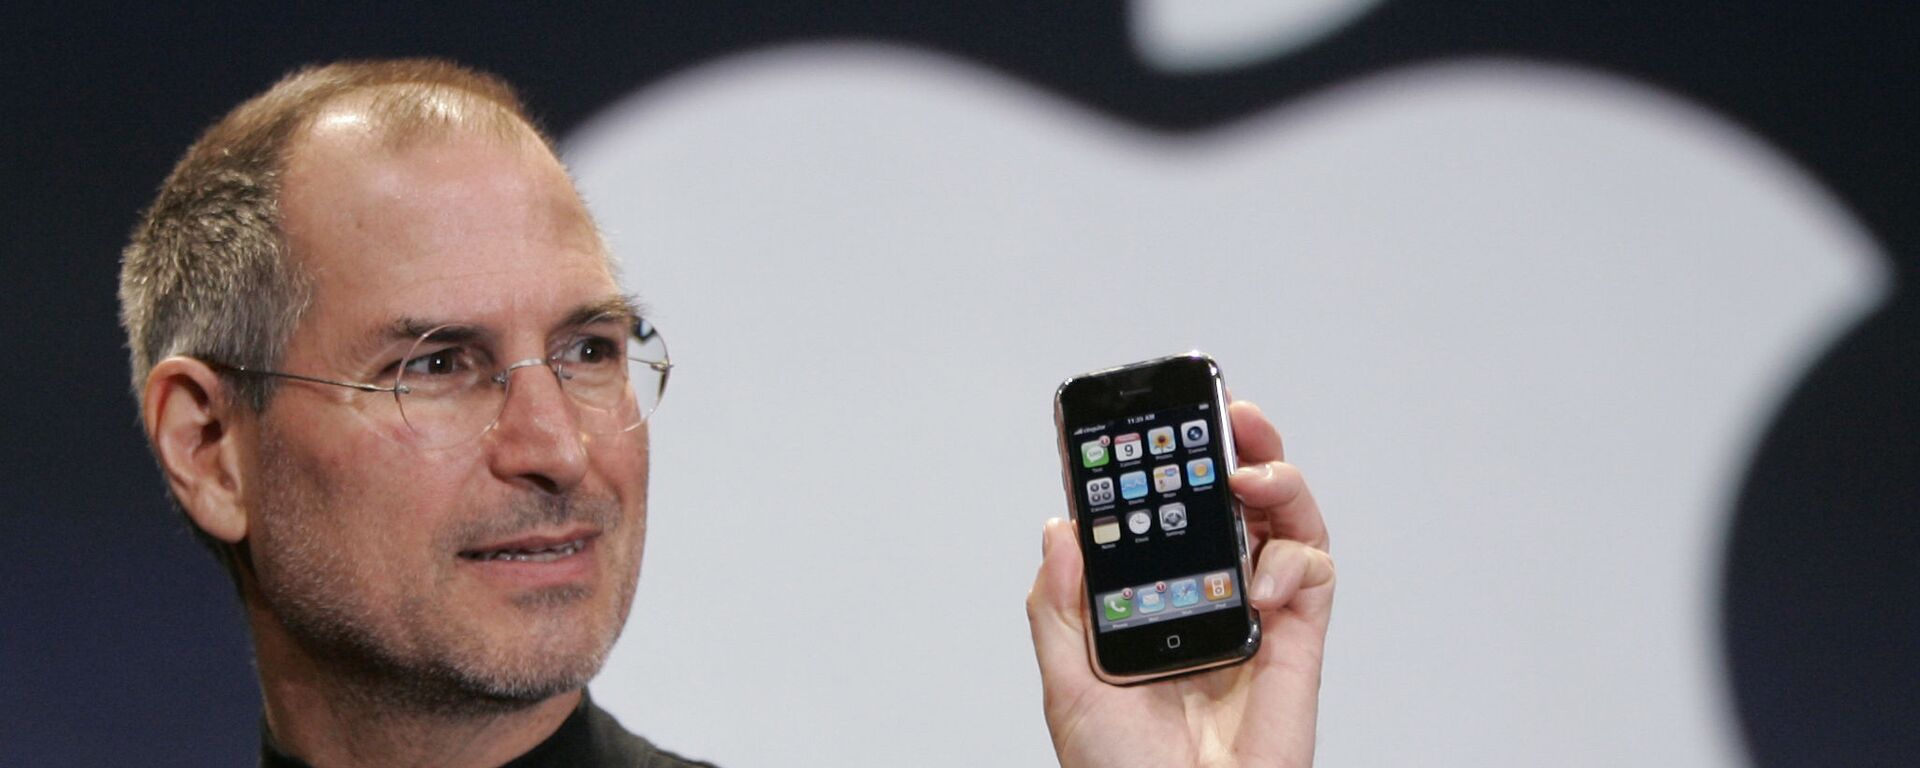 Giám đốc điều hành Apple Apple Steve Jobs cầm chiếc Iphone tại hội nghị MacWorld, San Francisco, năm 2007 - Sputnik Việt Nam, 1920, 22.05.2020